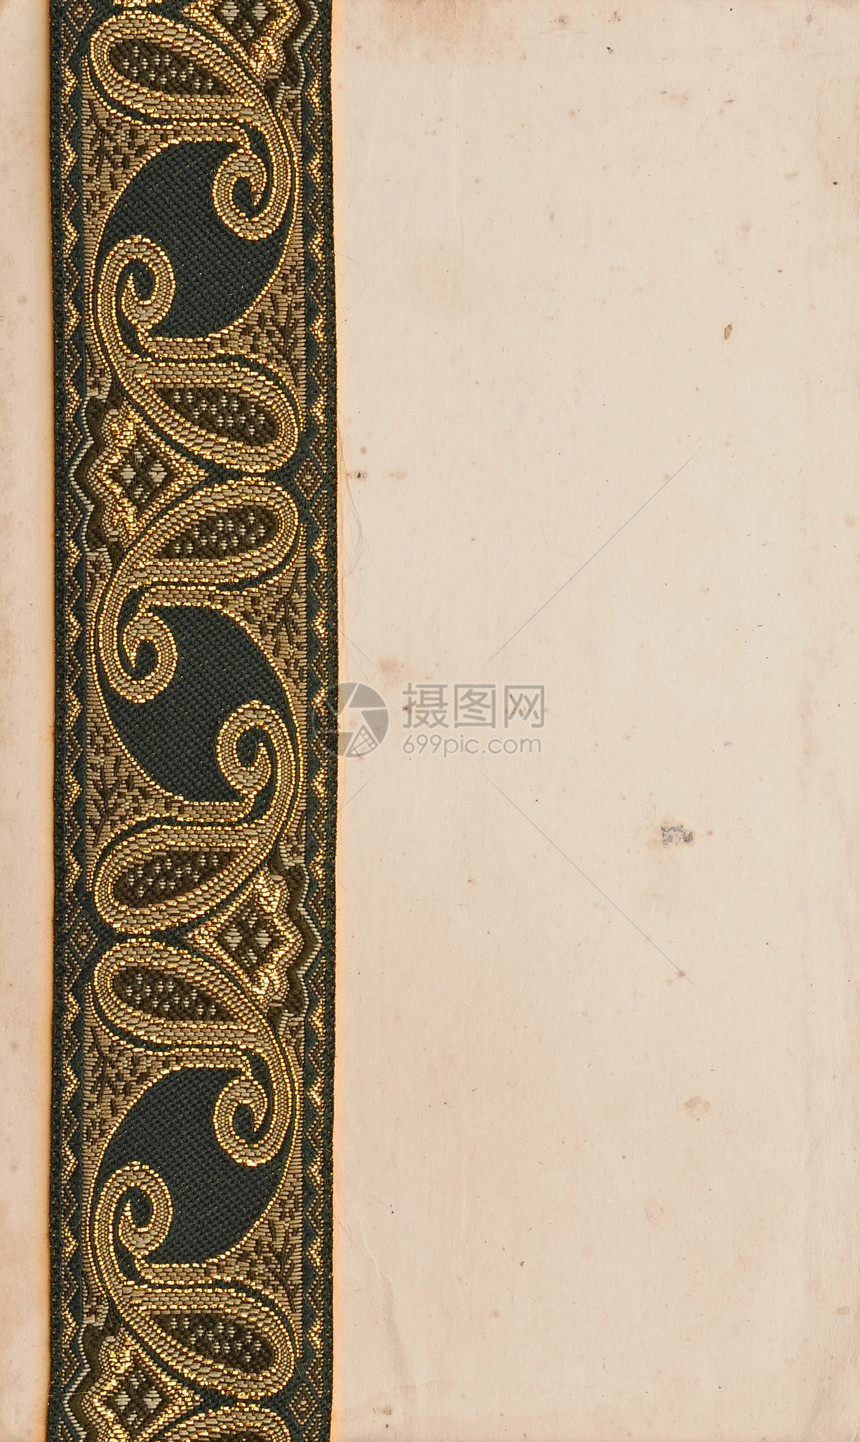 带有古董丝带的旧纸面背景边界海豹羊皮纸空白签名褐色文档邮票插图皇家图片